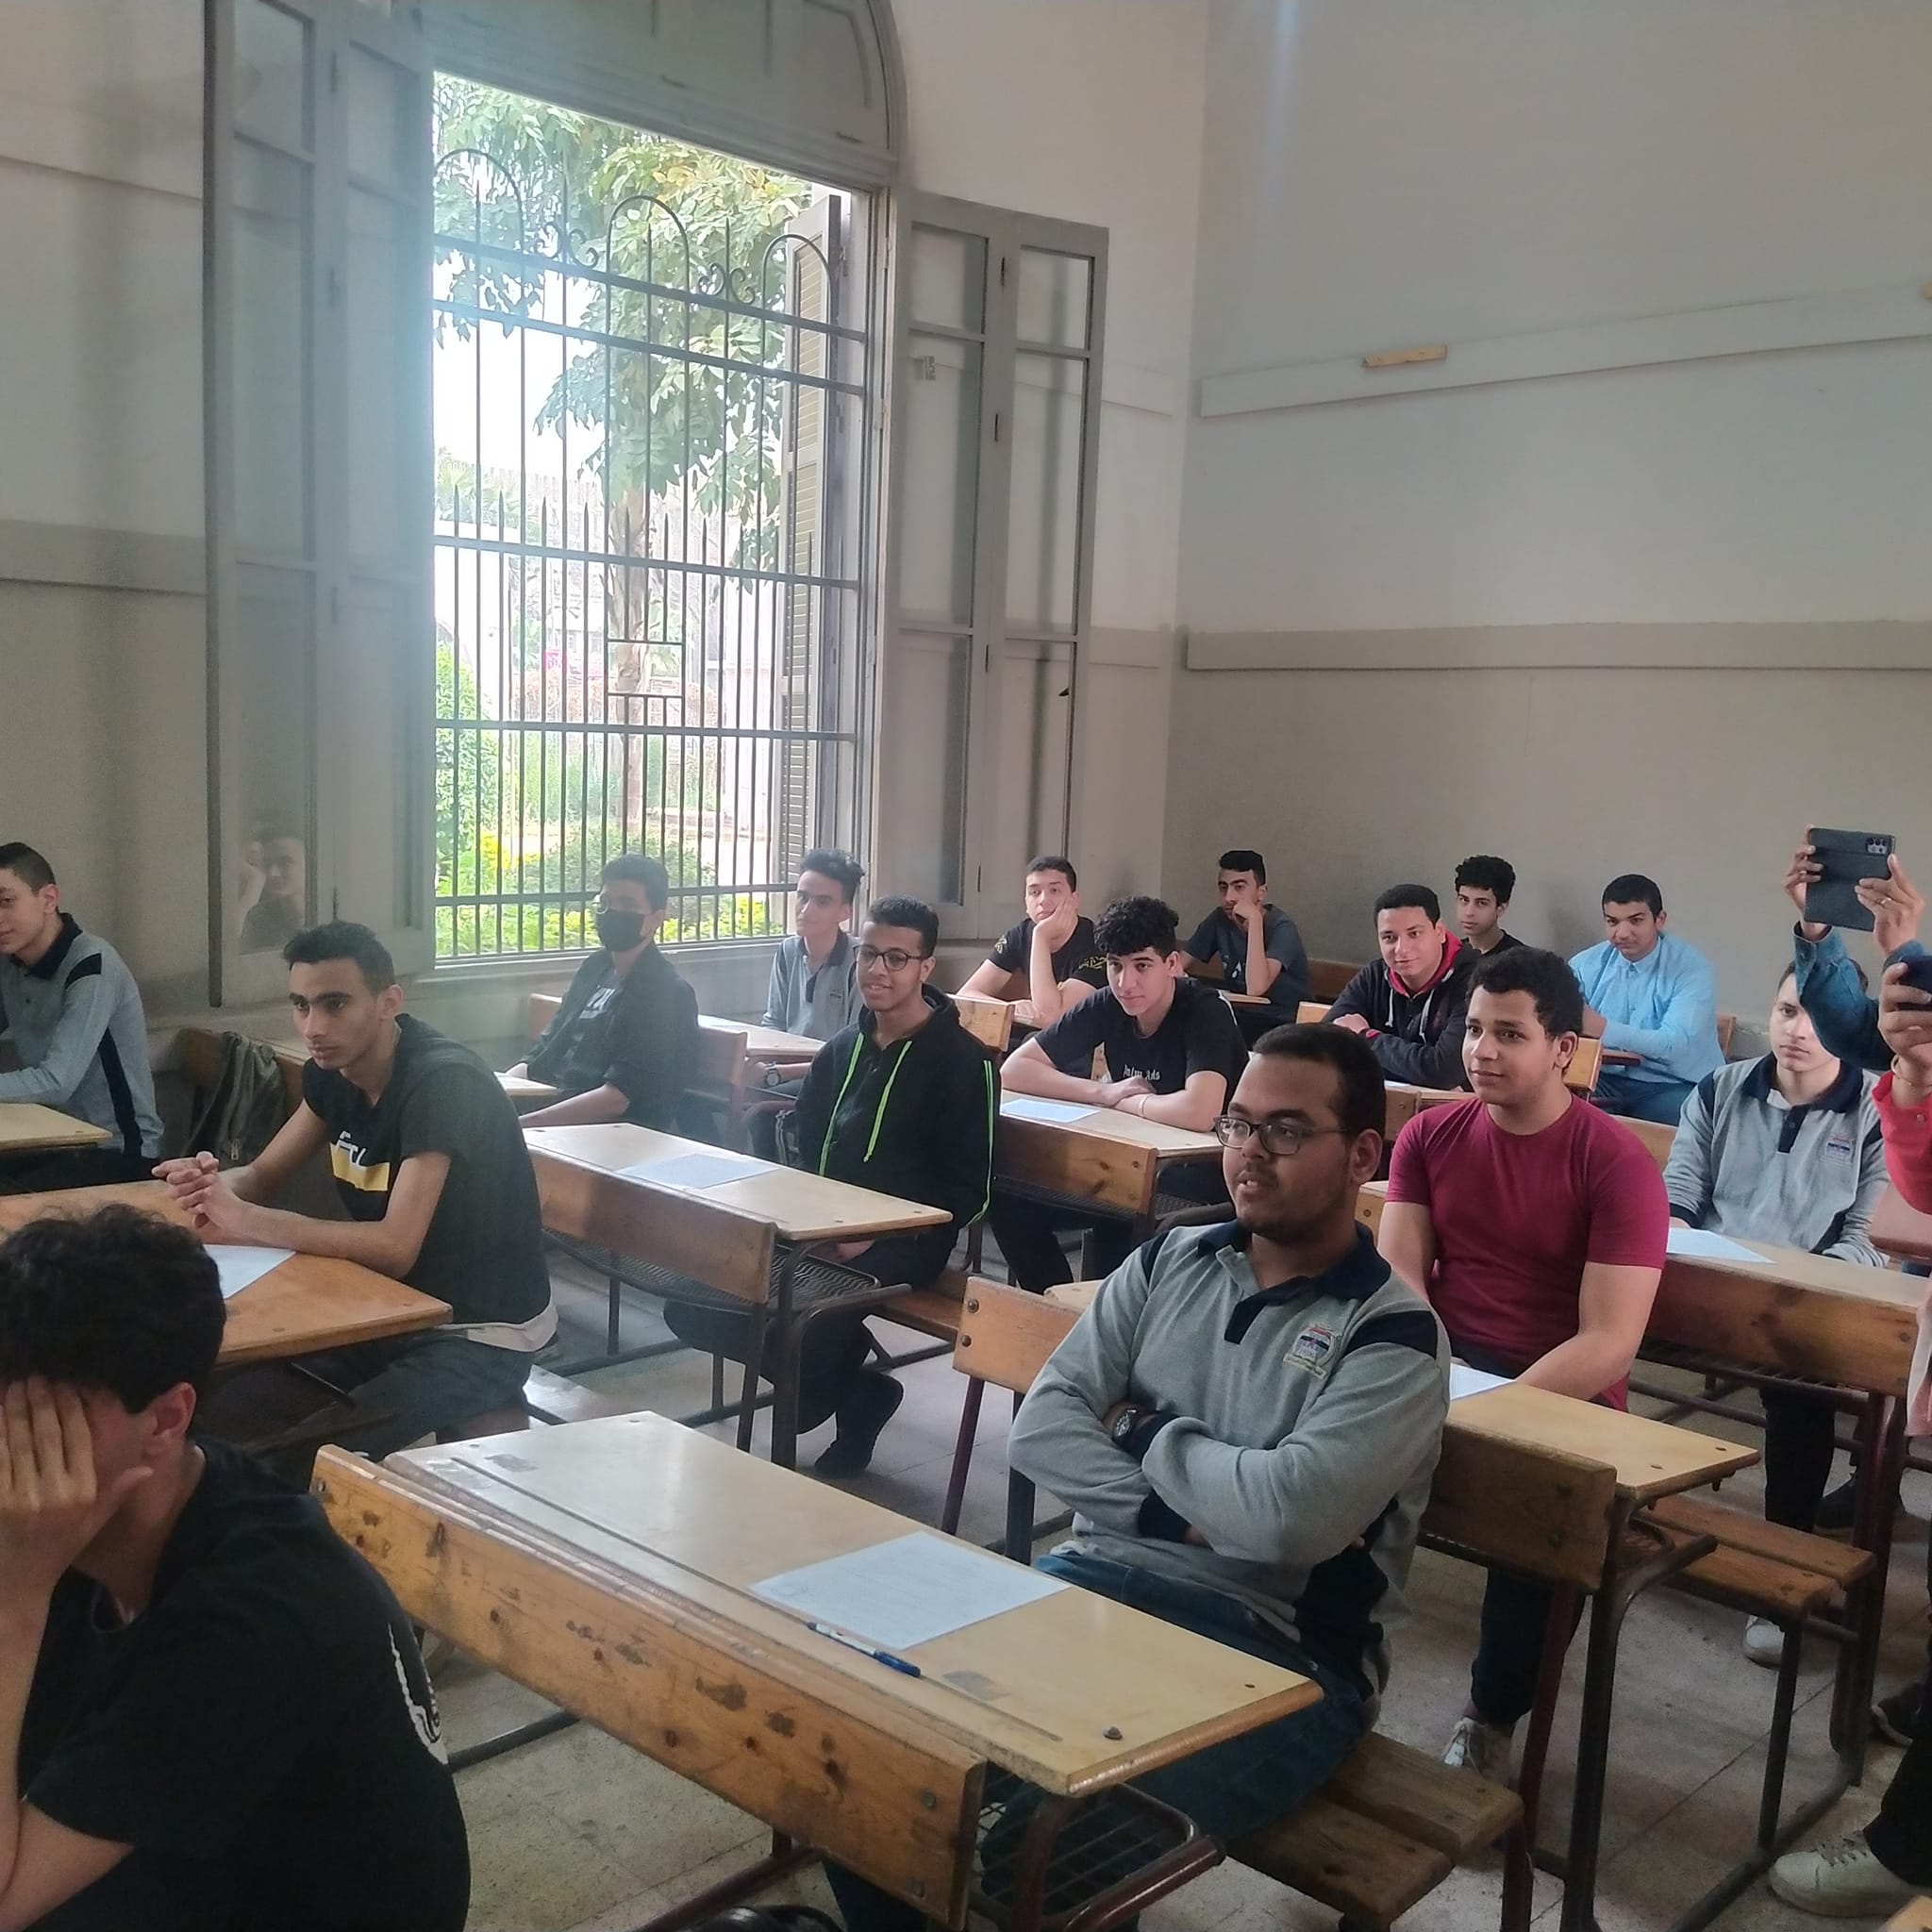 أولياء أمور مصر: الإنجليزي رسم البسمة على وجوه الطلاب والغش الإلكتروني يحتاج لتدخل 